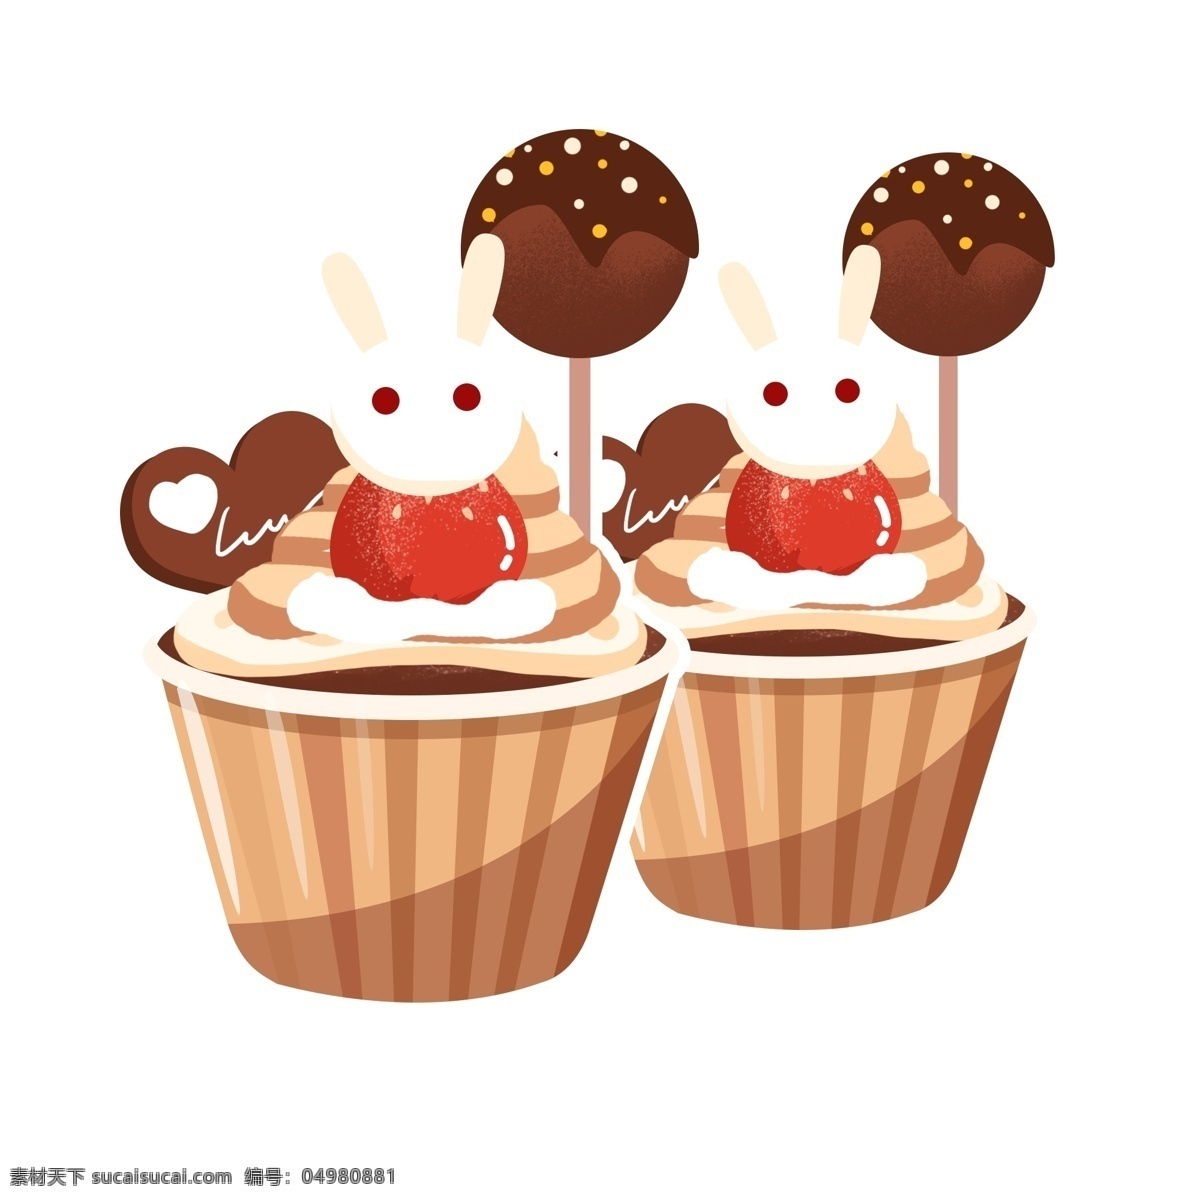 美食 甜品 巧克力 兔子 蛋糕 矢量 商用 爱心 卡通 杯蛋糕 cupcake chocolate 巧克力棒 奶油